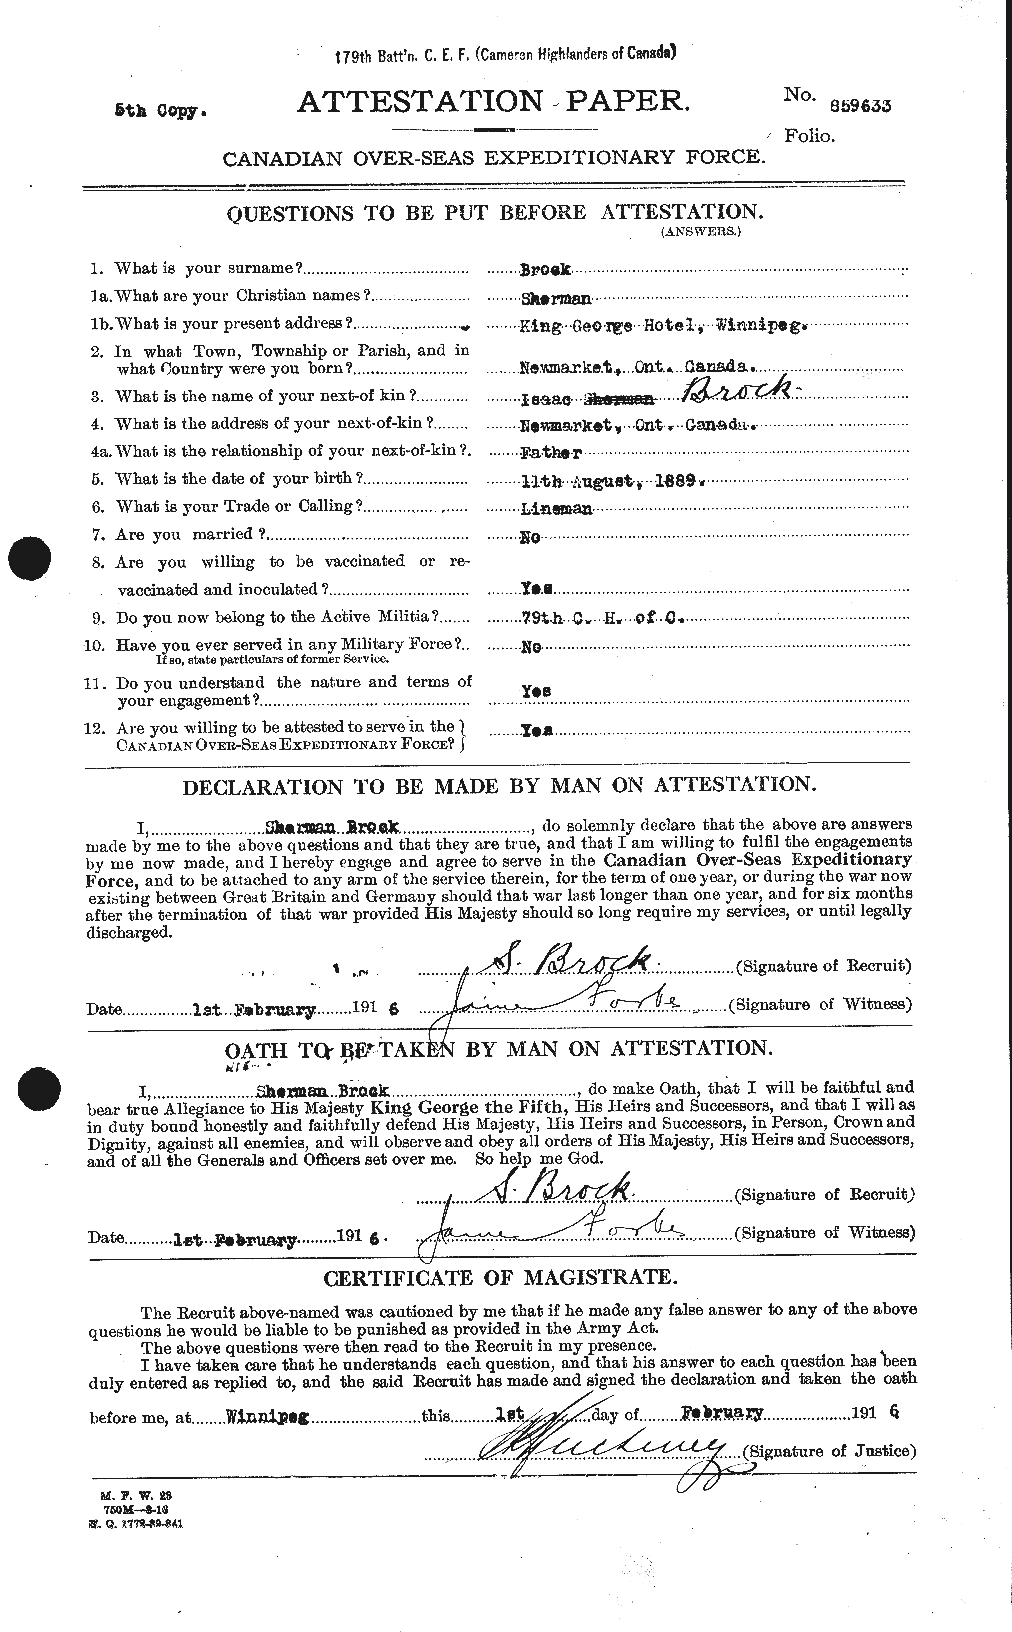 Dossiers du Personnel de la Première Guerre mondiale - CEC 258239a